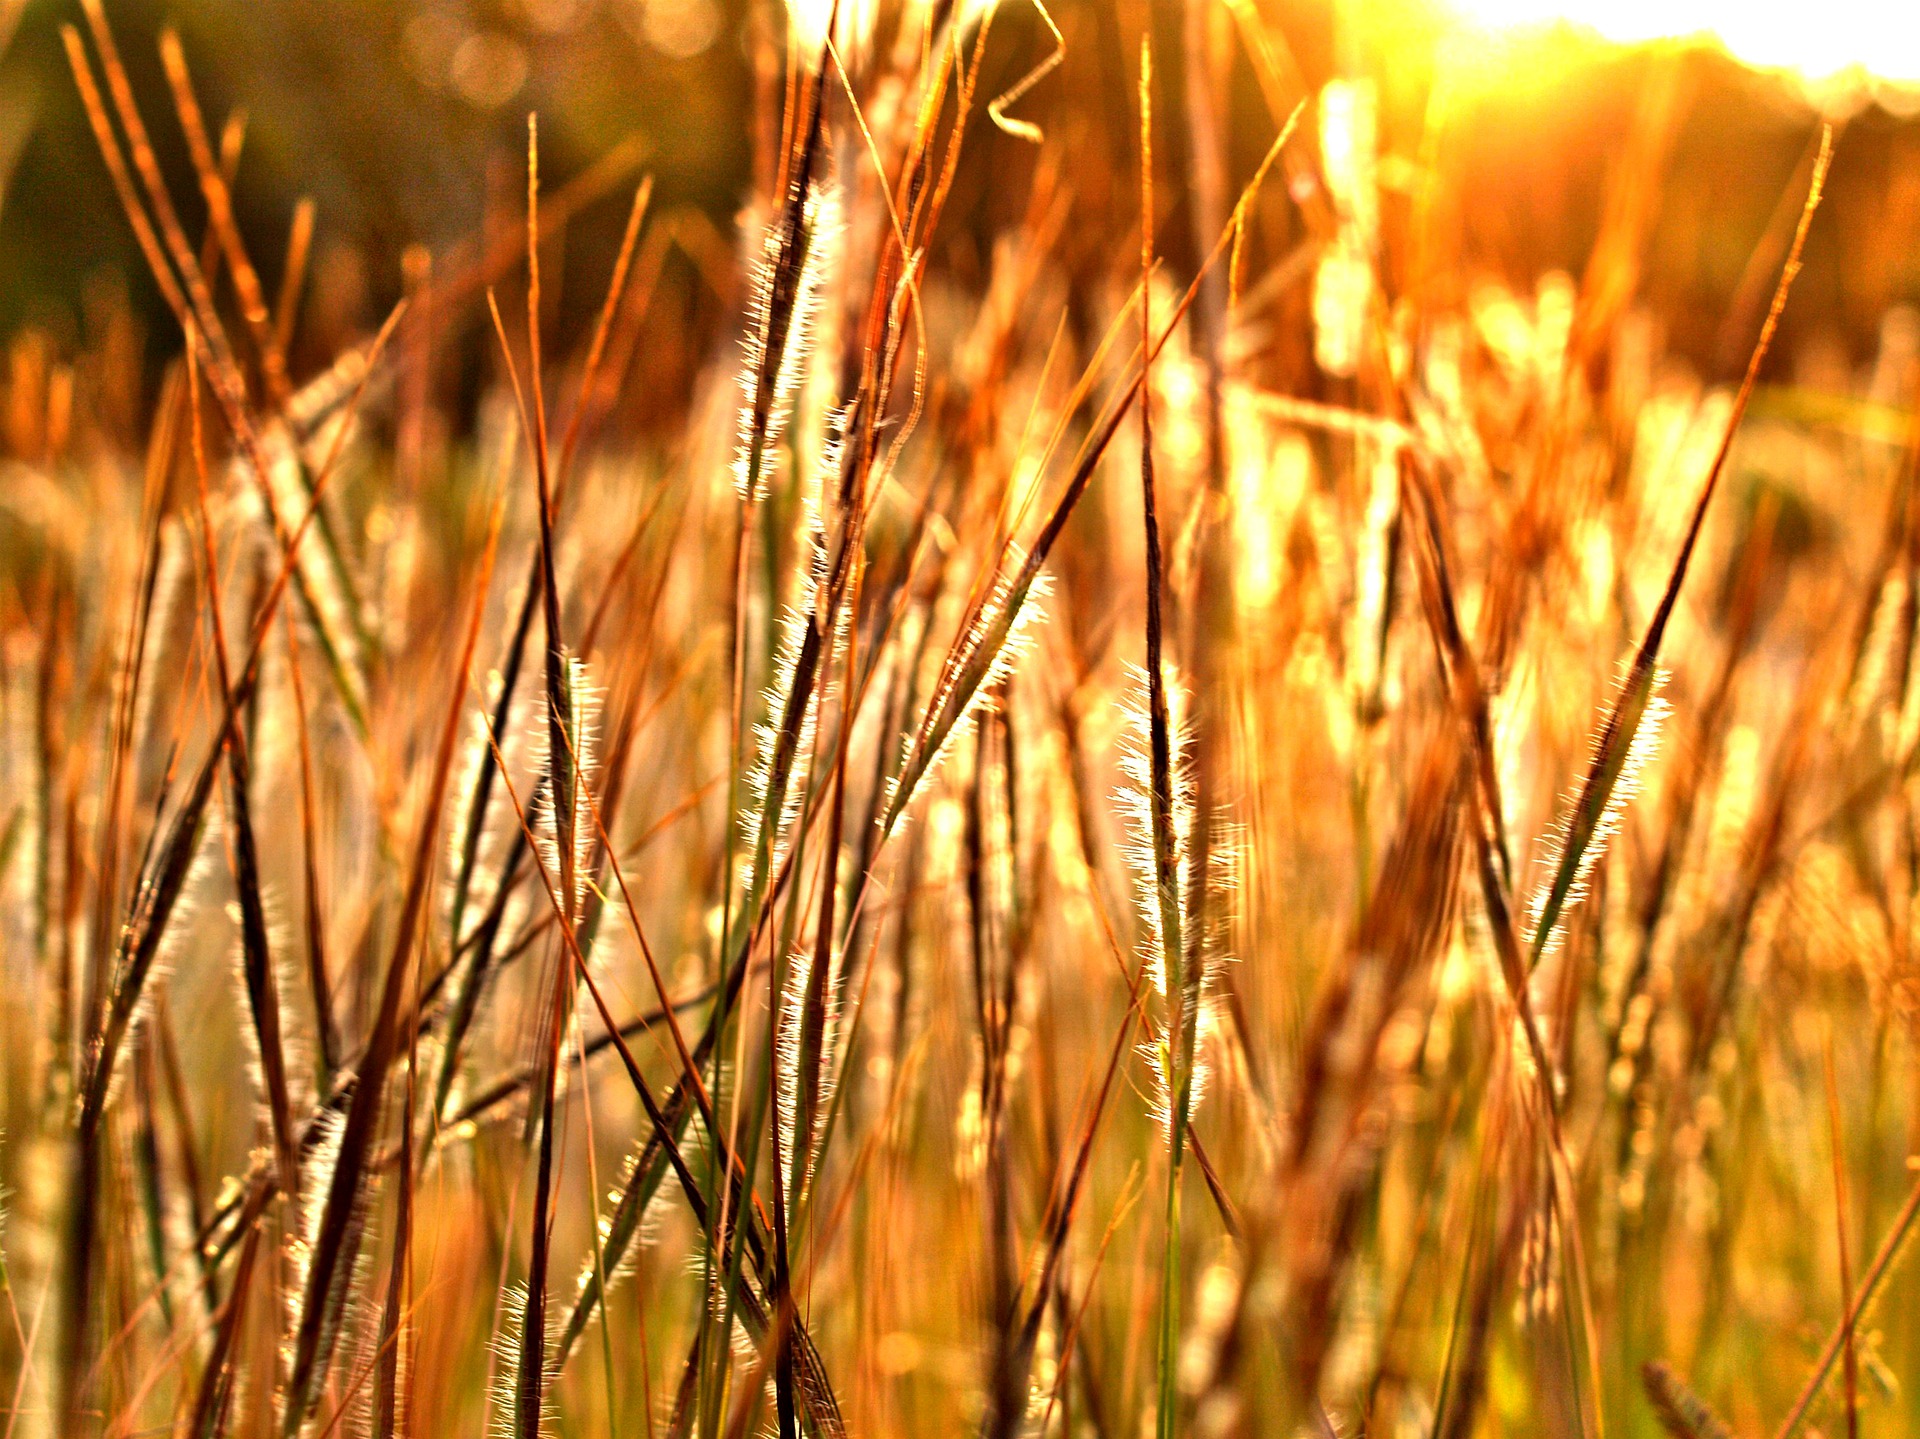 Grain in a field.